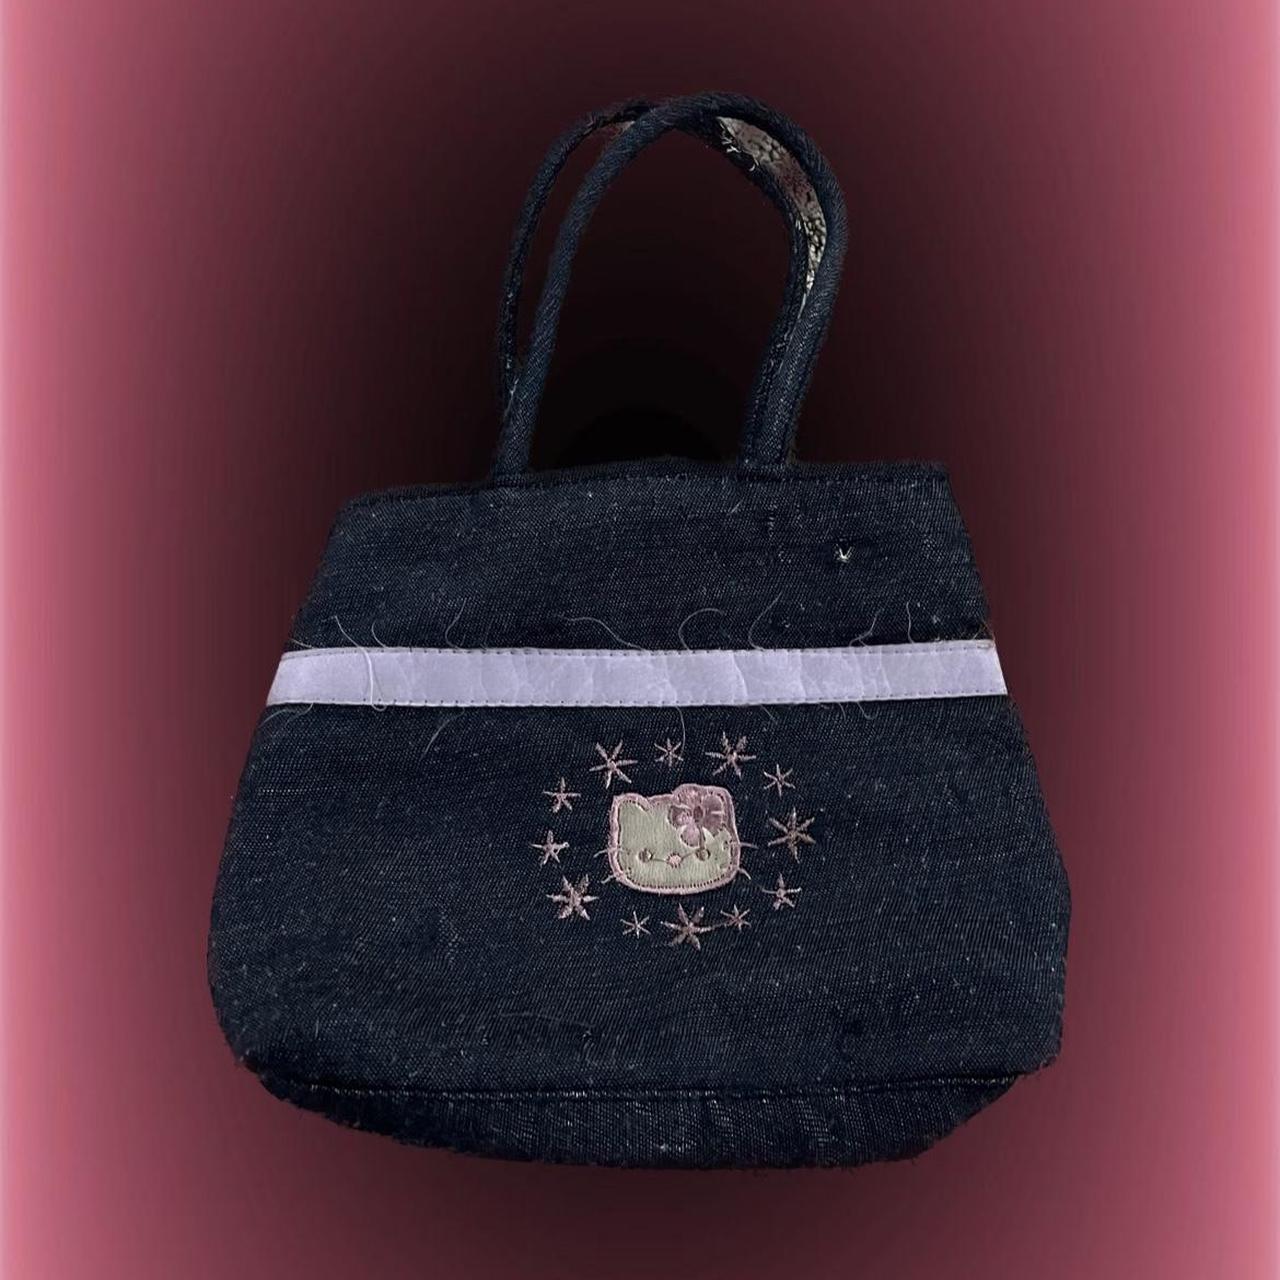 Buy SM Mini Purse for Toddler Girls Crossbody Cute Princess Handbags  Shoulder Bag for Toddler Little Girl Shoulder Bag for Kids (Black) at  Amazon.in